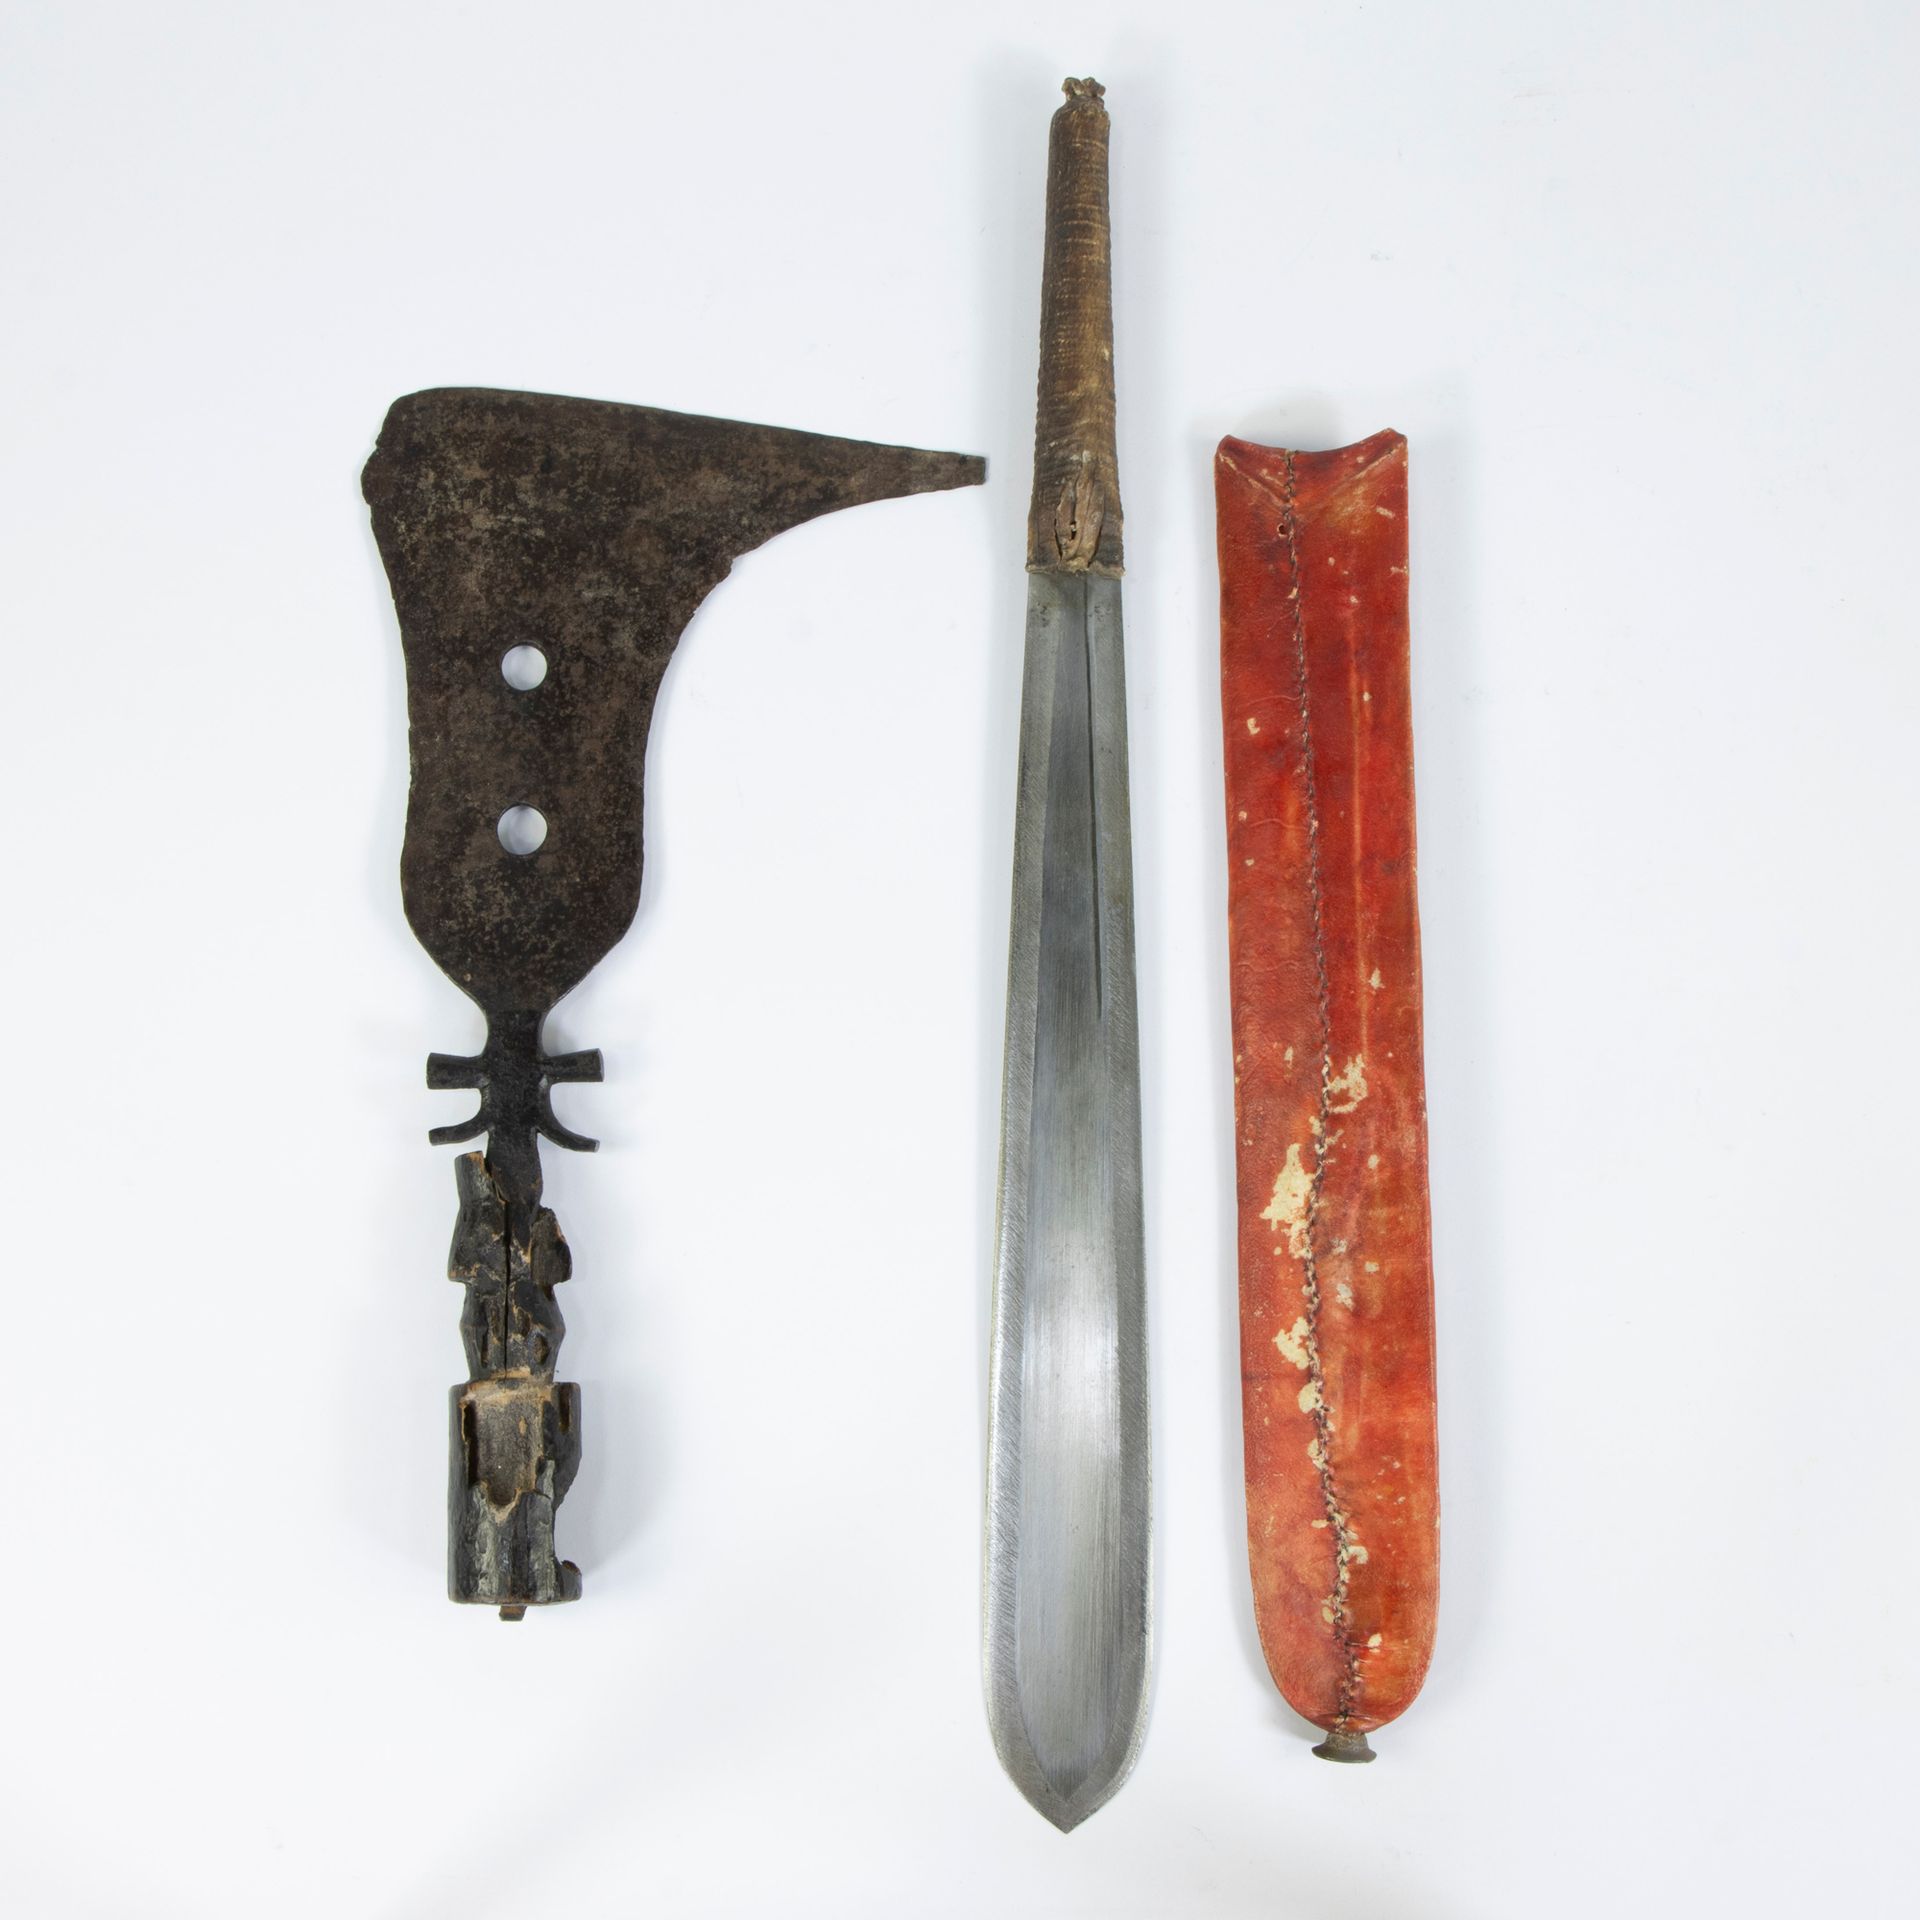 Null Hache Bakonge et couteau Touareg
Bakonge bijl et Tuareg mes
L 39 - 55,5 cm